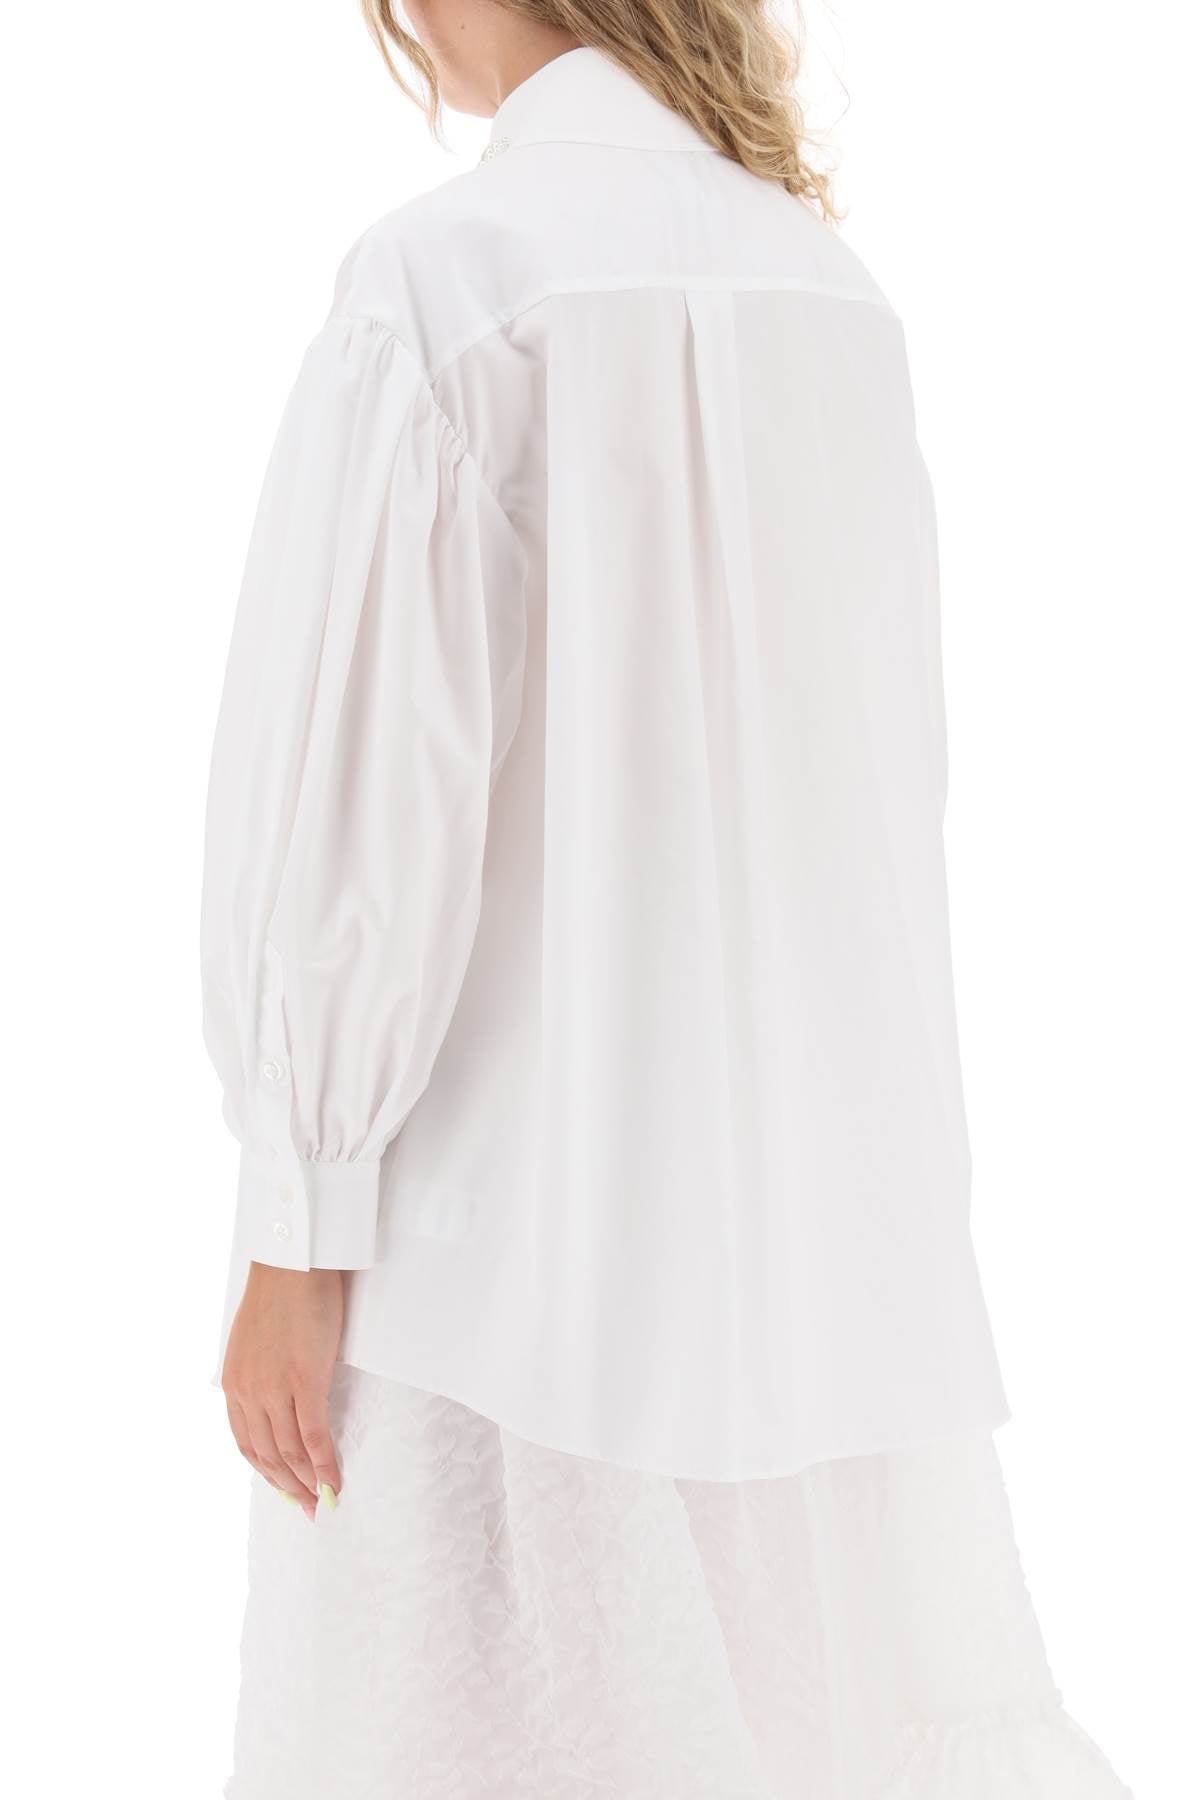 经典白色衬衫，优雅泡泡袖，饰以珍珠和水晶装饰